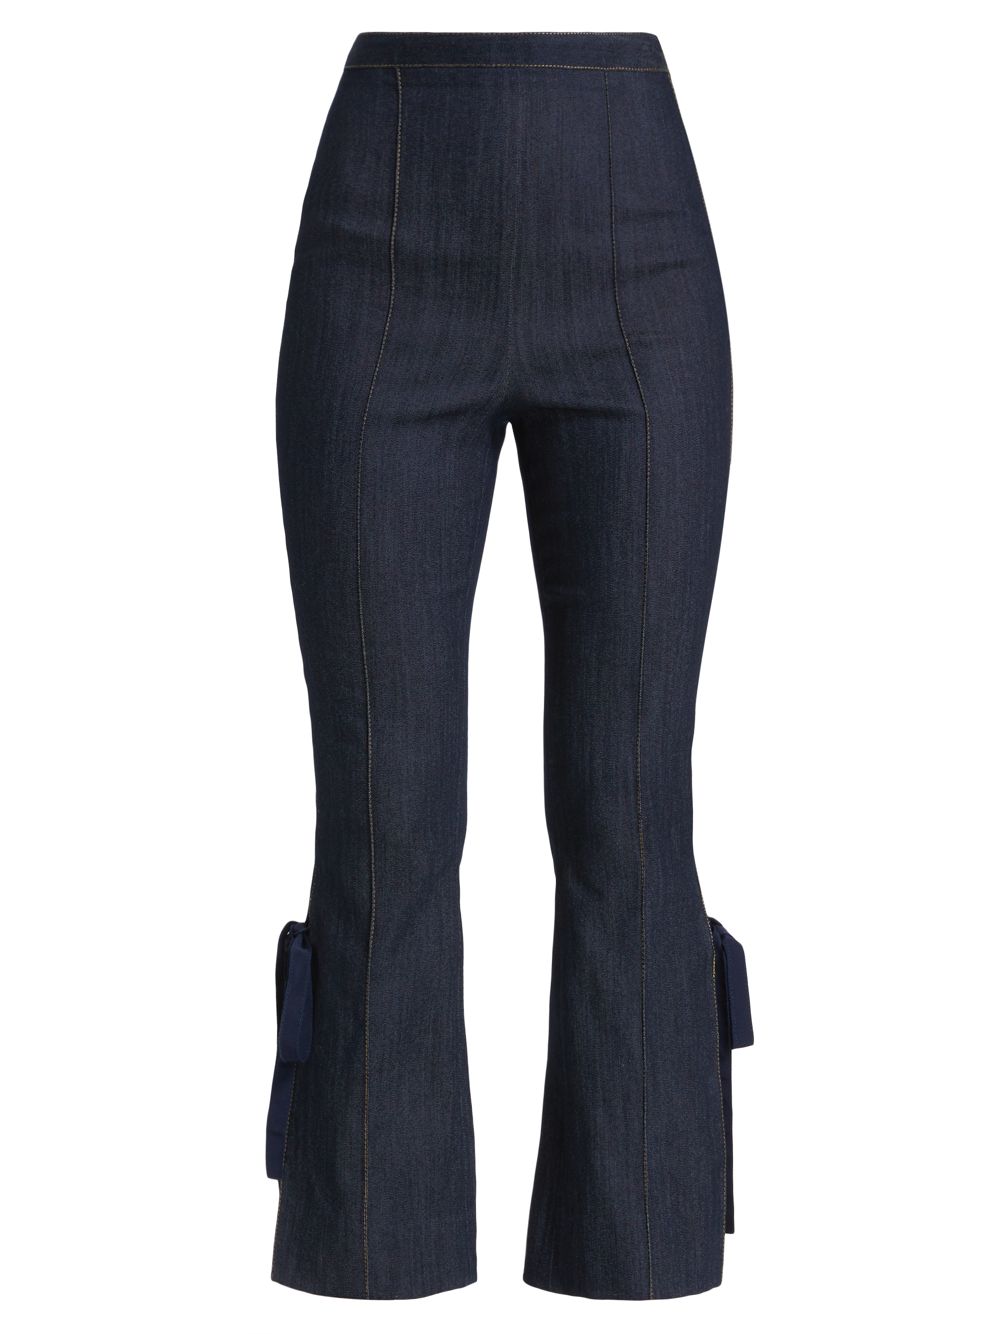 Расклешенные джинсы с завязками Lou Cinq à Sept, индиго джинсы francine с высокой посадкой цвета индиго cinq à sept цвет blue